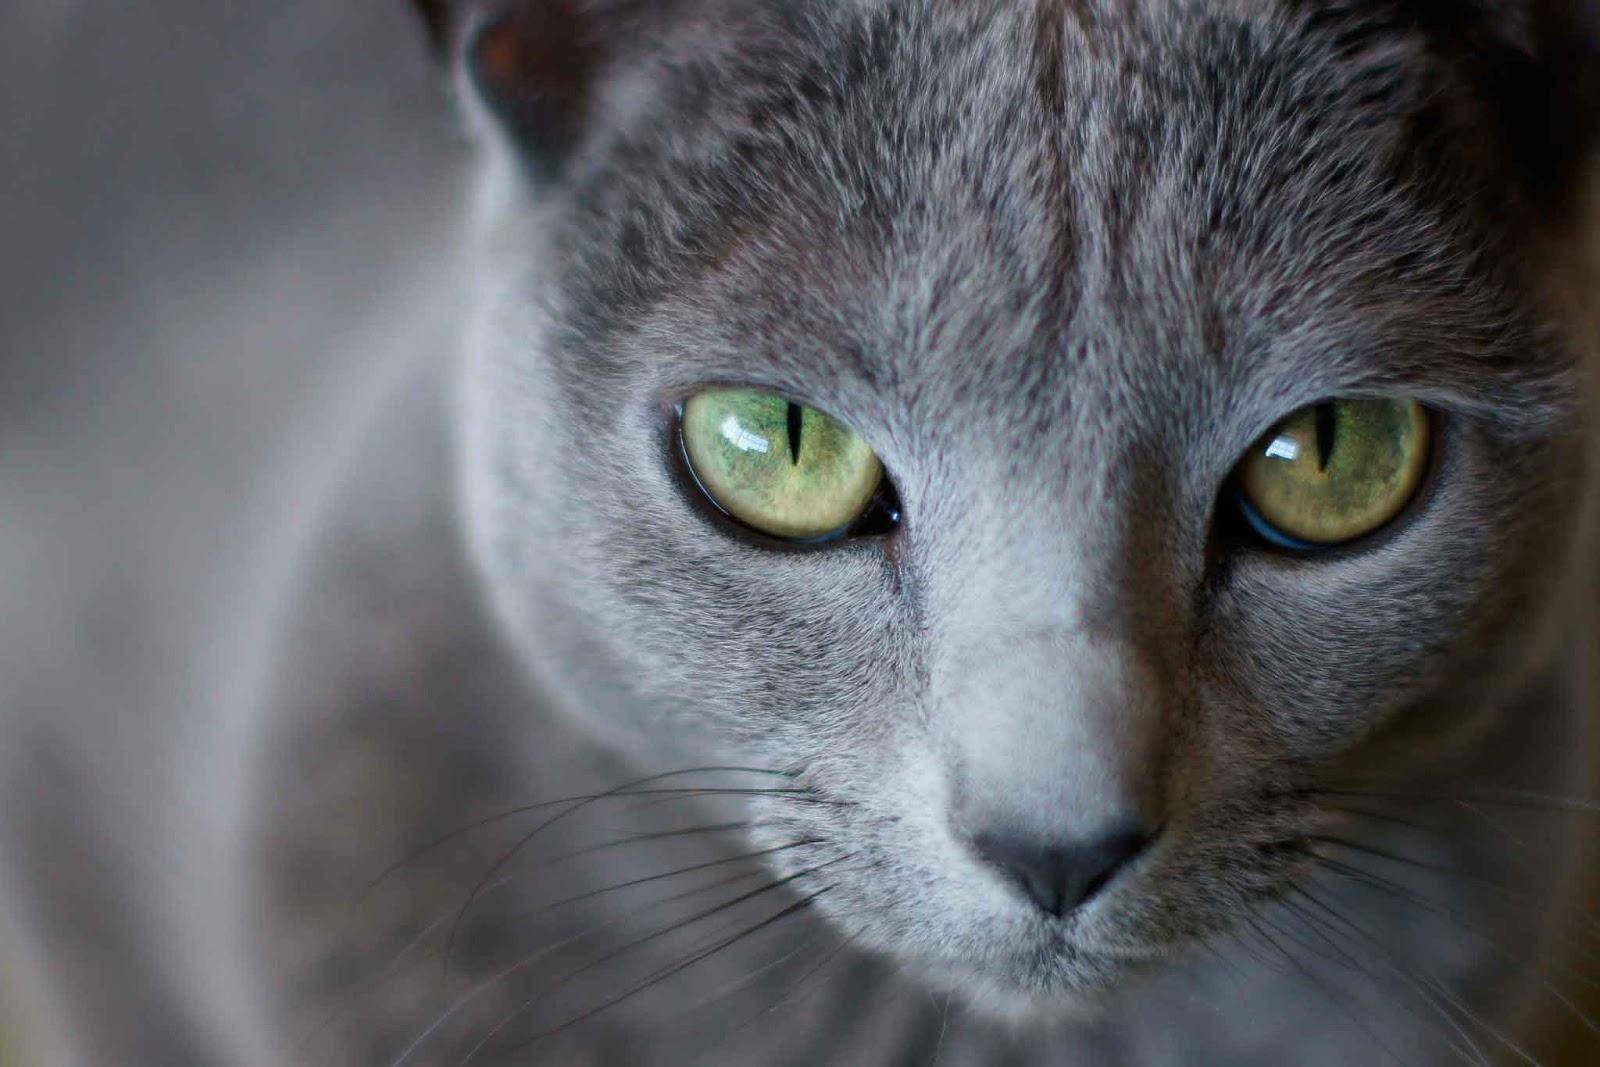 Порода кошек с разными глазами не существует: фото и научное объяснение красивого феномена